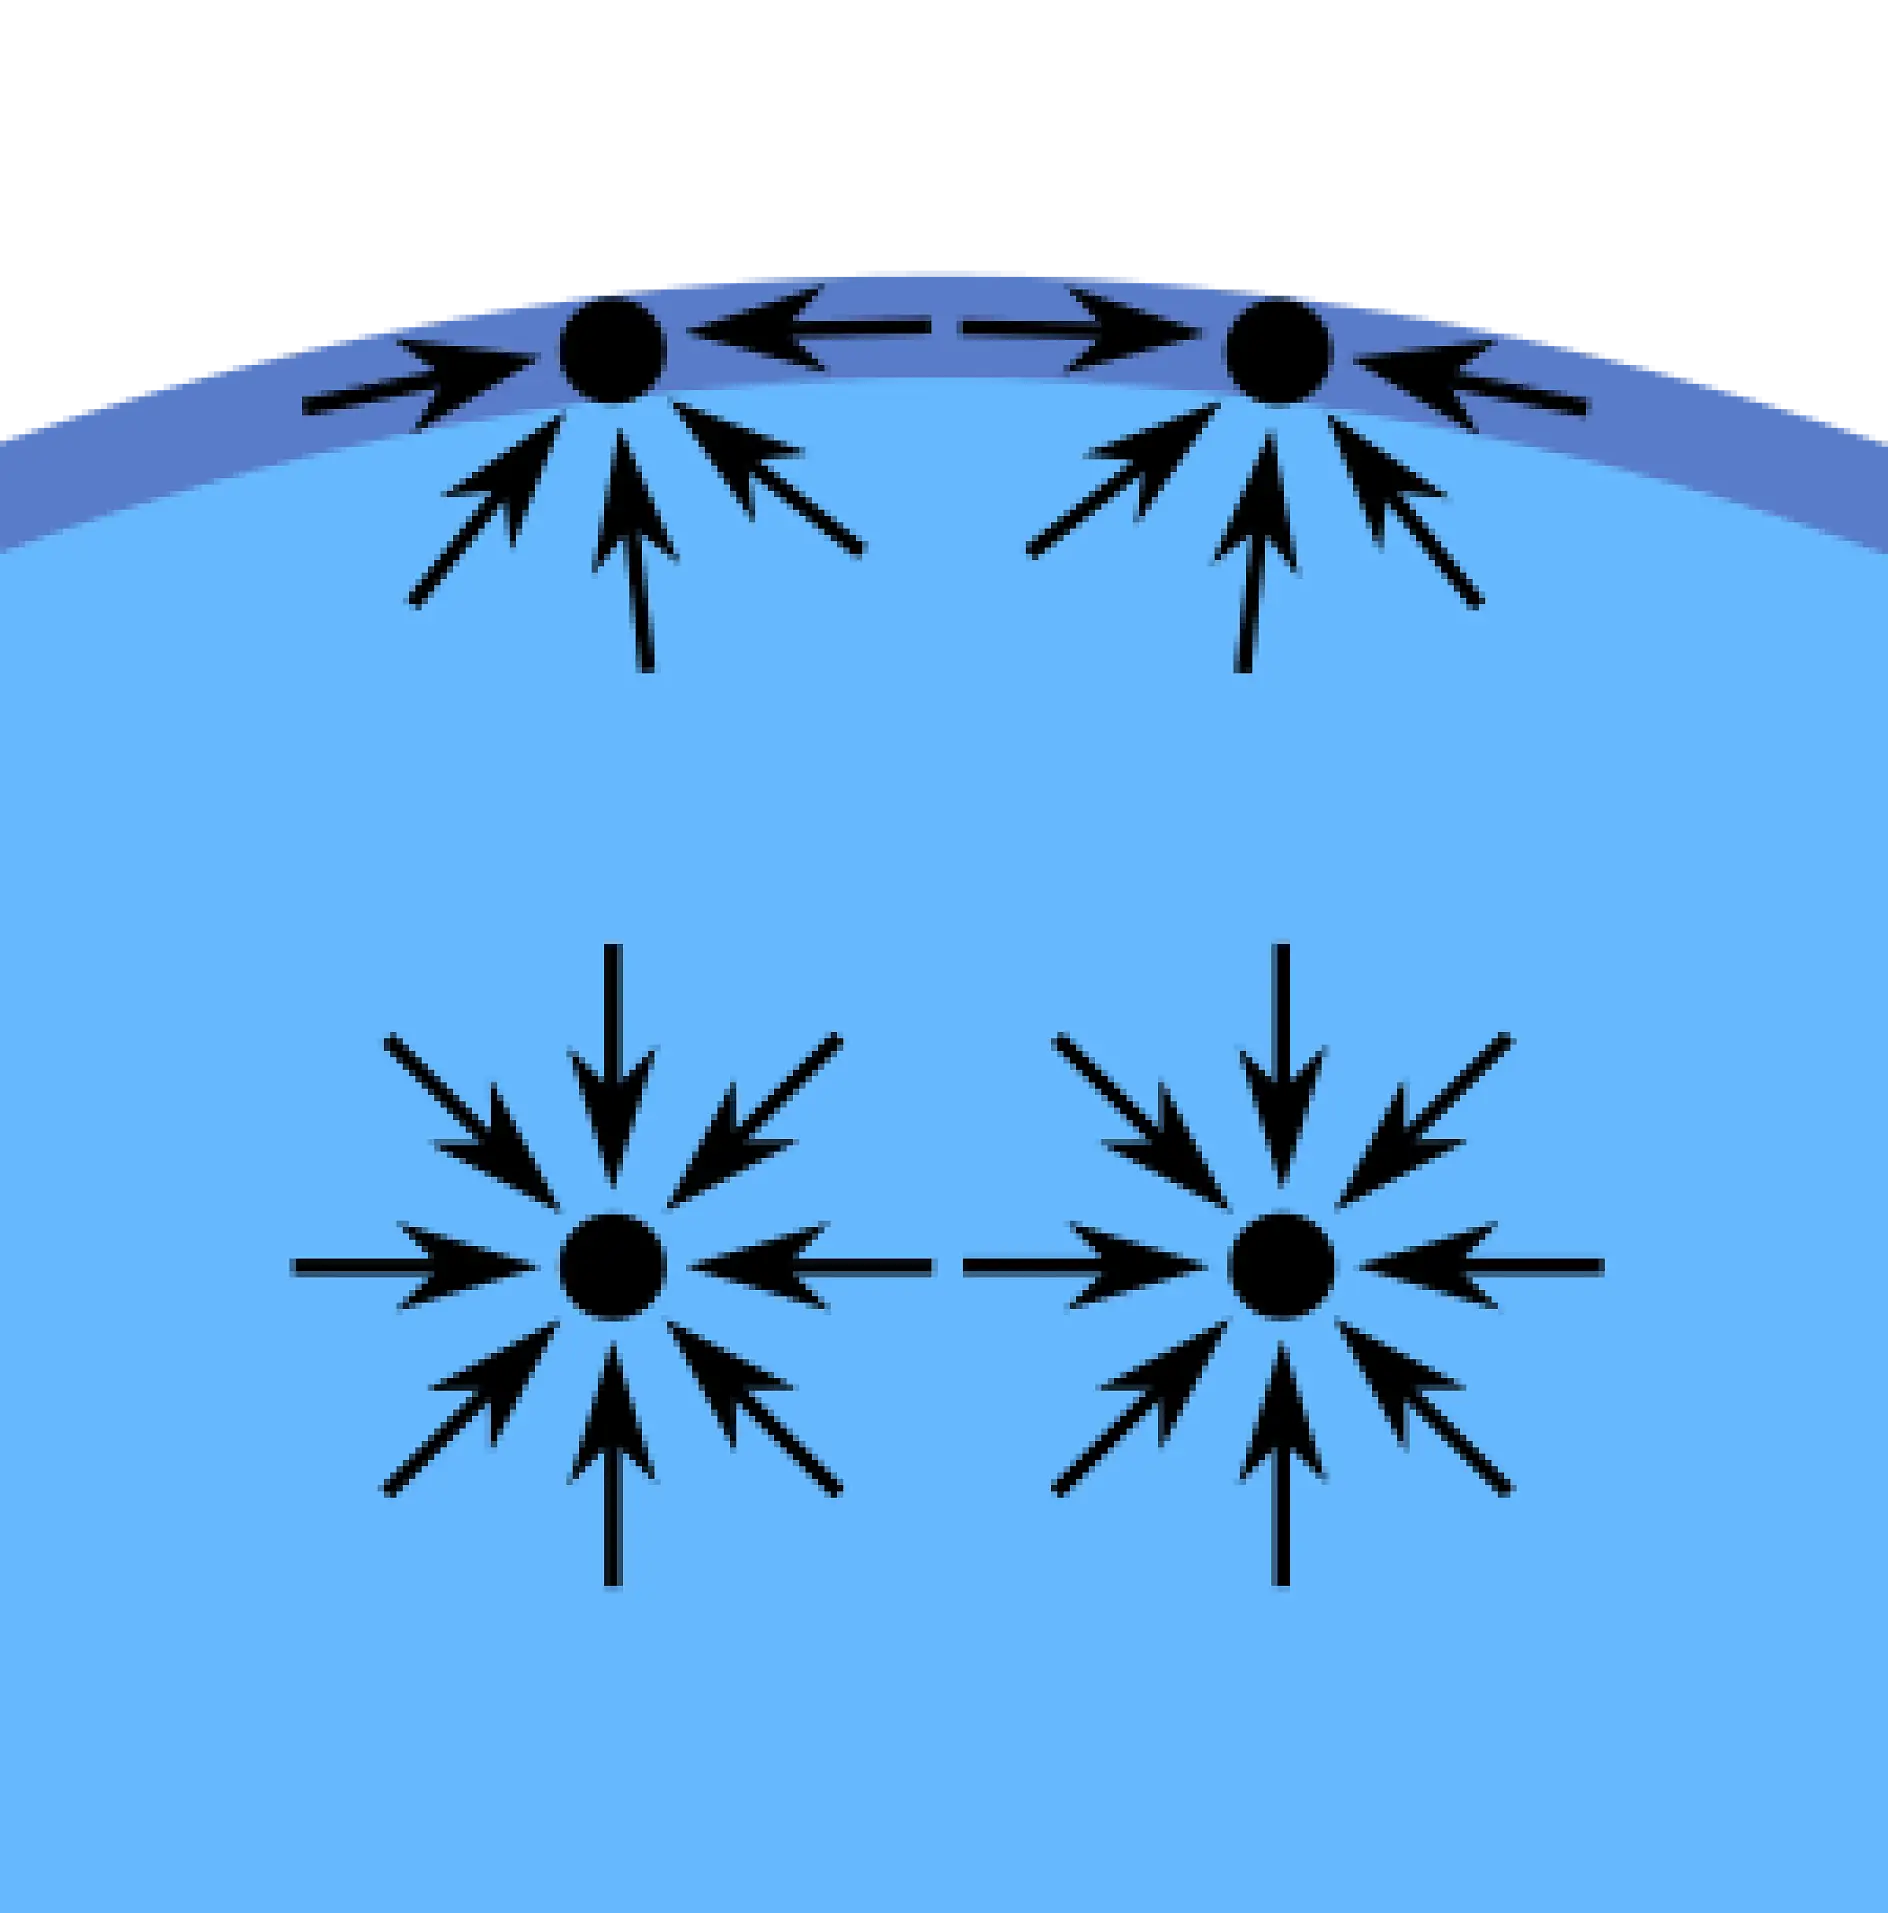 液体分子間の凝集力（内部引力）は「表面張力」と呼ばれる現象を生み出します。 例えば、コップに満たした水の表面分子は、全面が他の水分子を含んでいるわけではありません。 そのため、この分子は水の内部方向に引きつけられ、隣接する水分子および下方向に位置する水分子と強い力で結合します。 この引力は水分子の上方にある空気分子の引力よりも大きくなります。 その結果、この内部引力が水と空気を分離する表面を形成します。